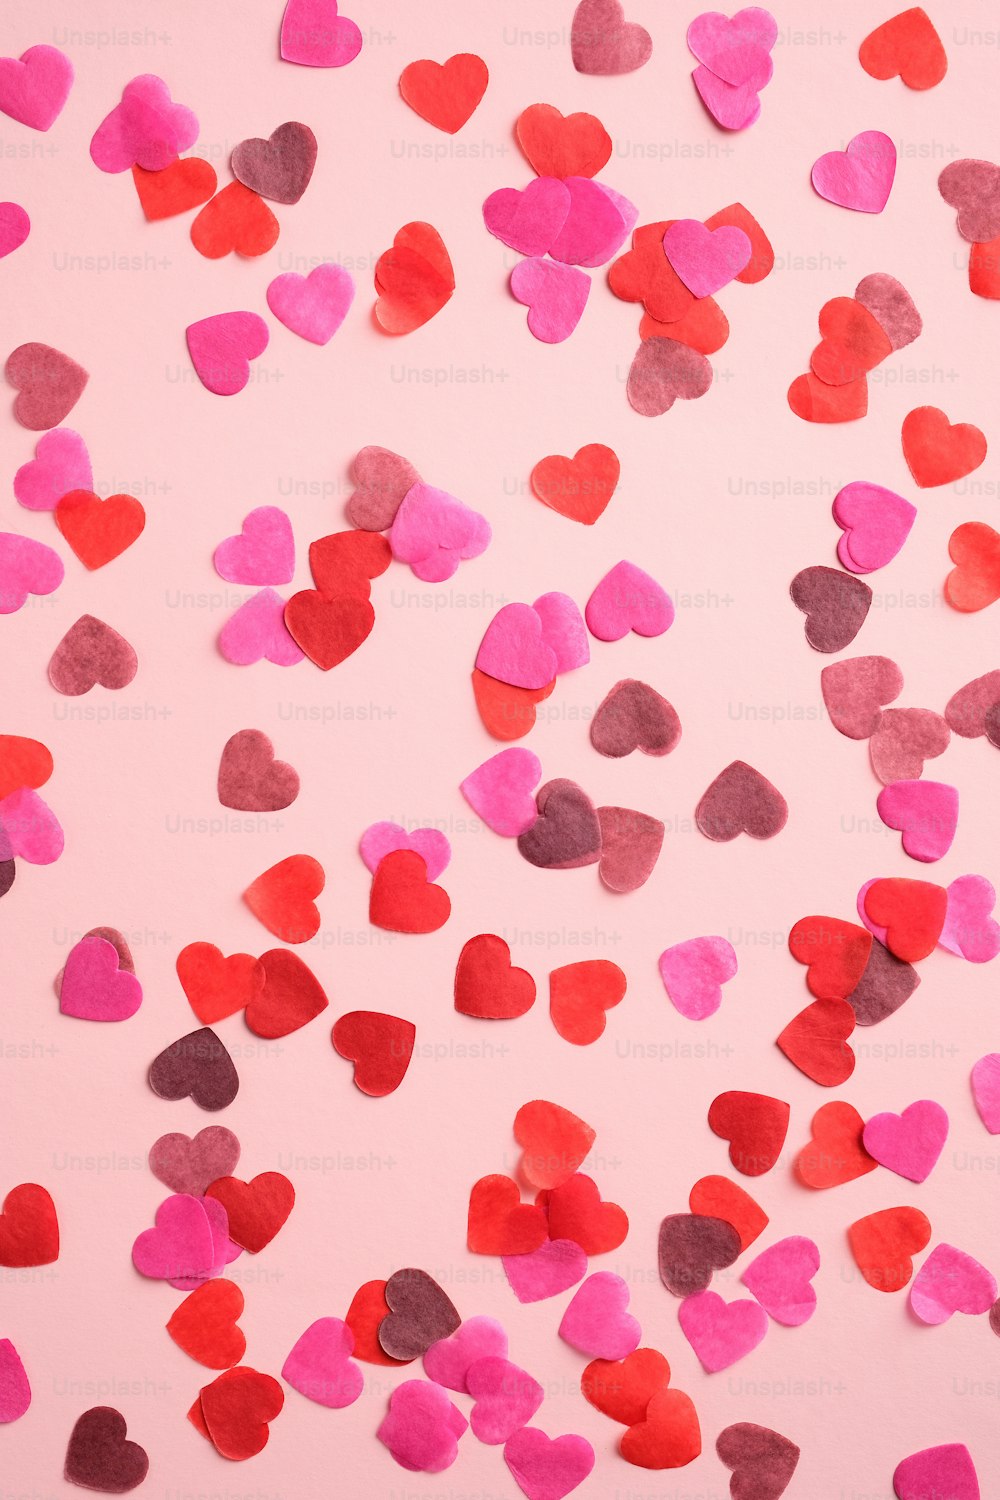 Padrão do Dia dos Namorados feito de corações no fundo rosa. Adequado para banner vertical, panfleto, brochura, histórias nas mídias sociais